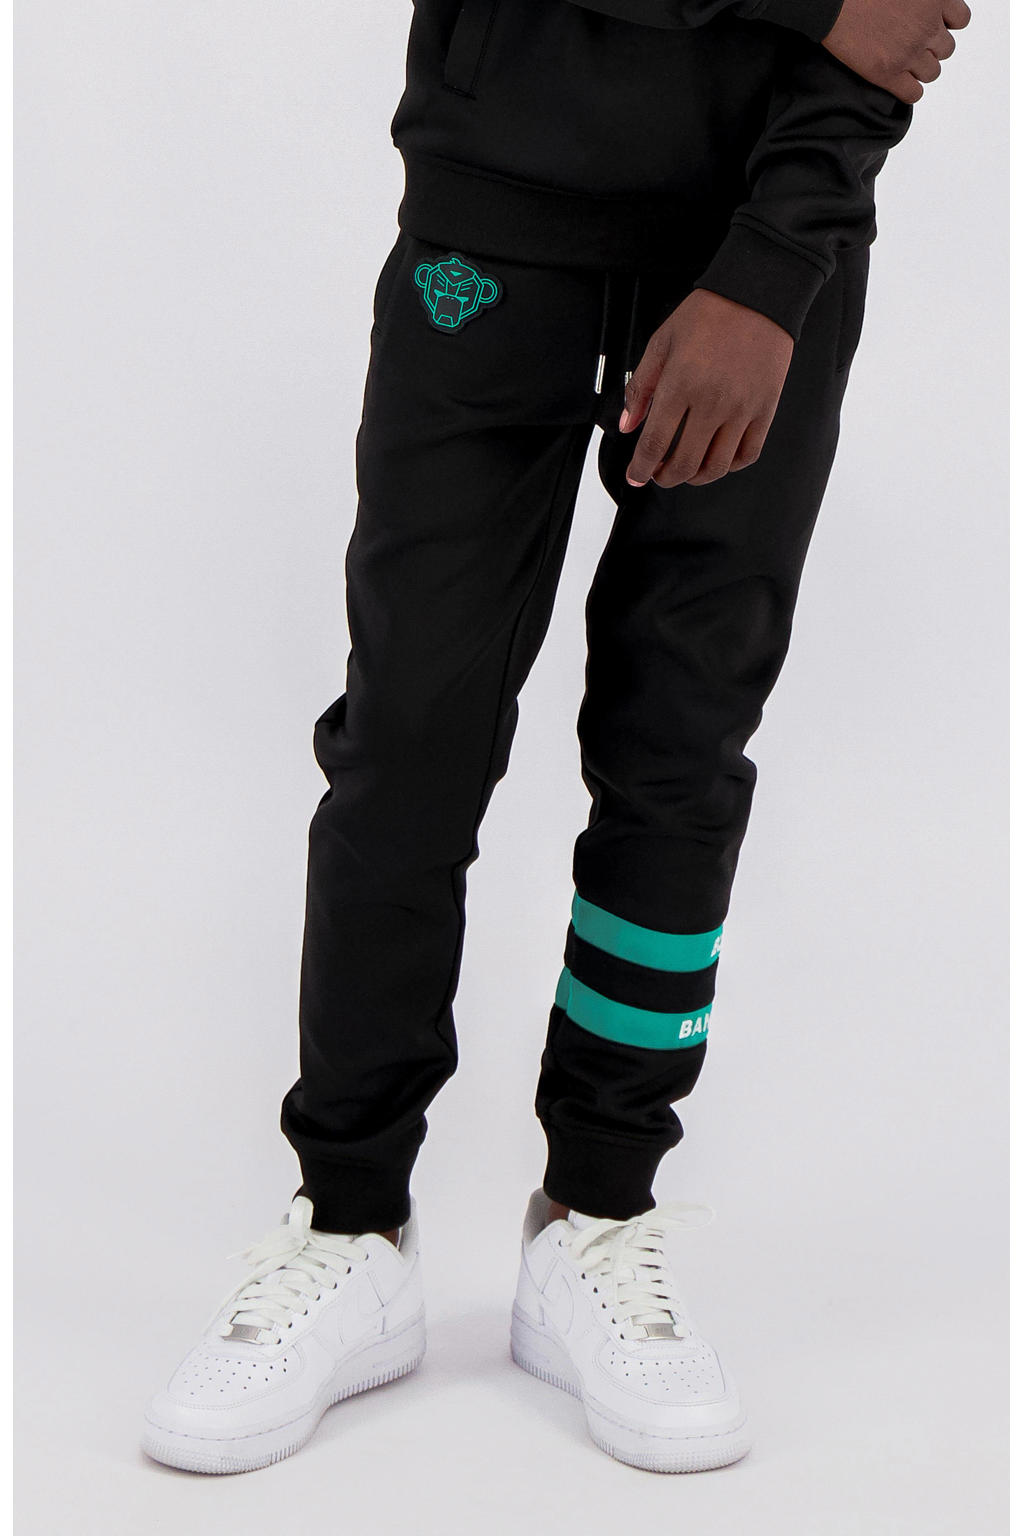 Zwarte jongens BLACK BANANAS slim fit broek mint van polyester met regular waist